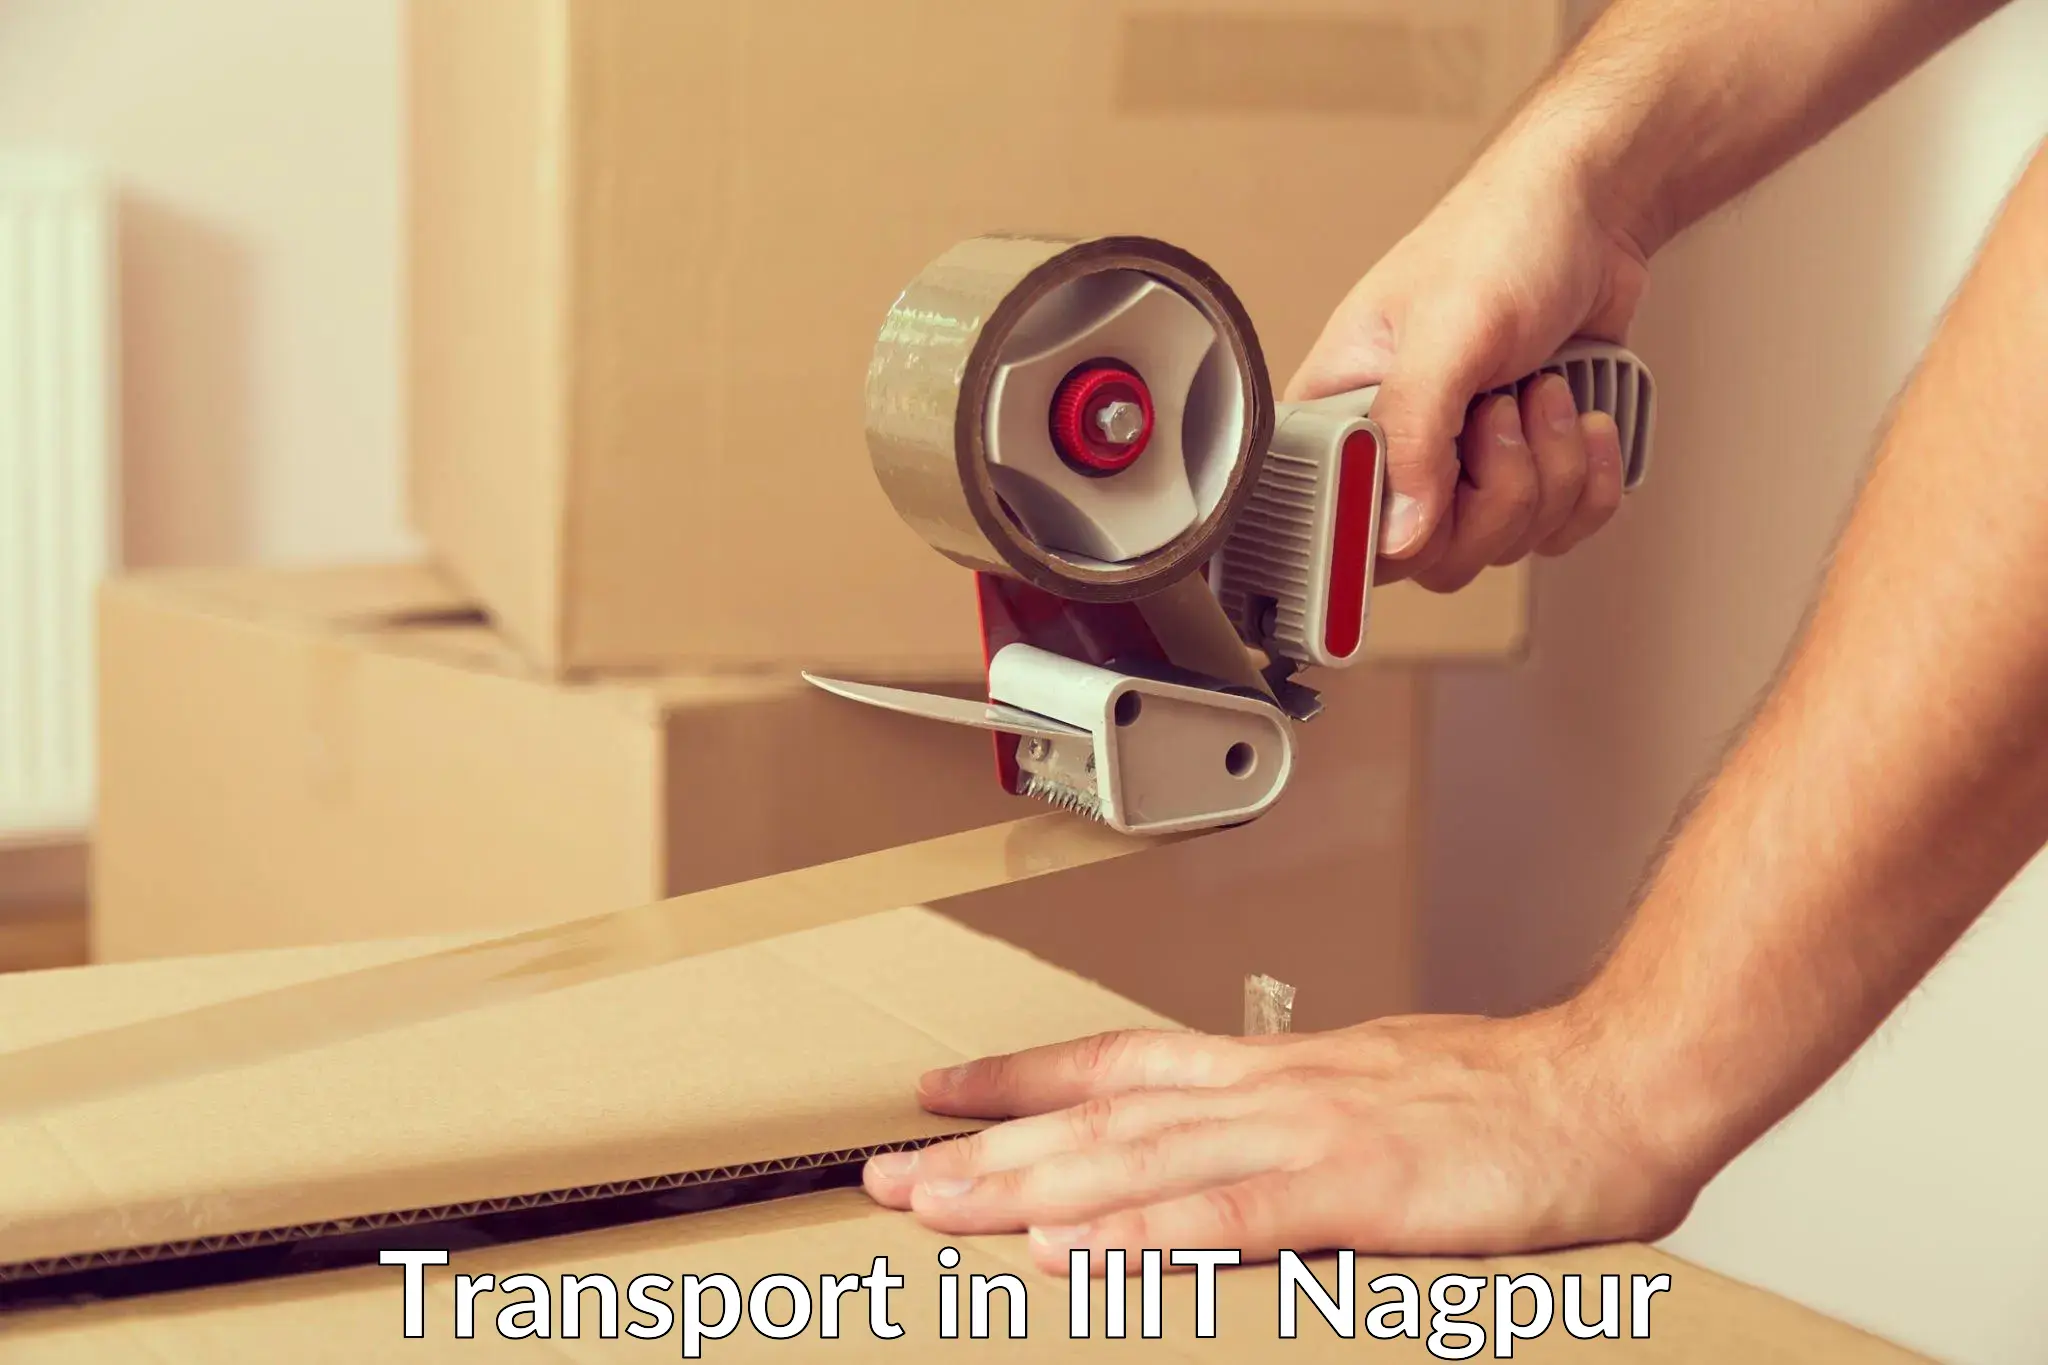 Online transport service in IIIT Nagpur